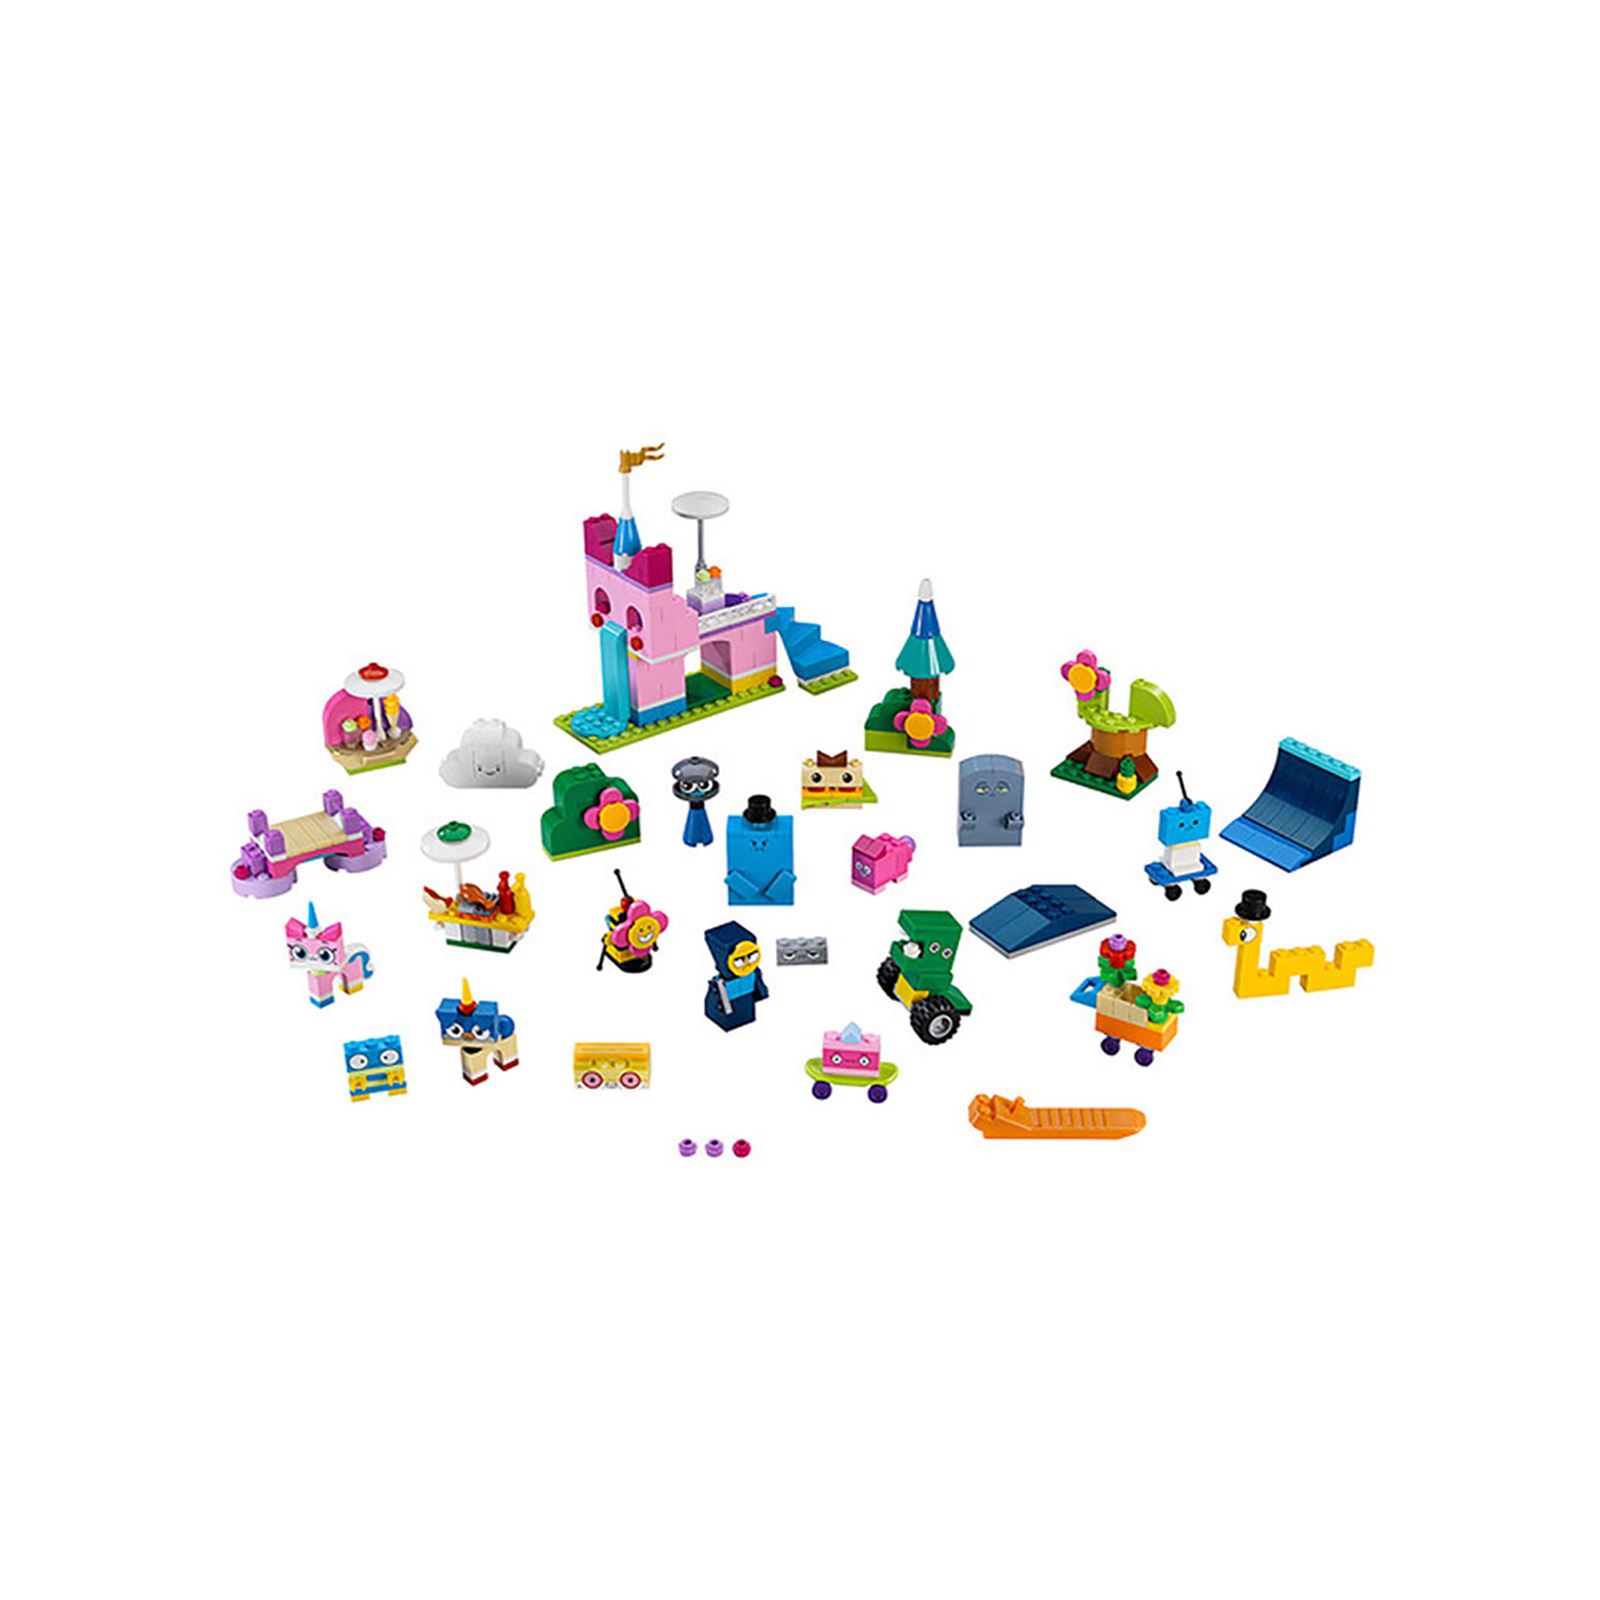 Lego Unikitty Krallığı Yaratıcı Eğlence Kutusu